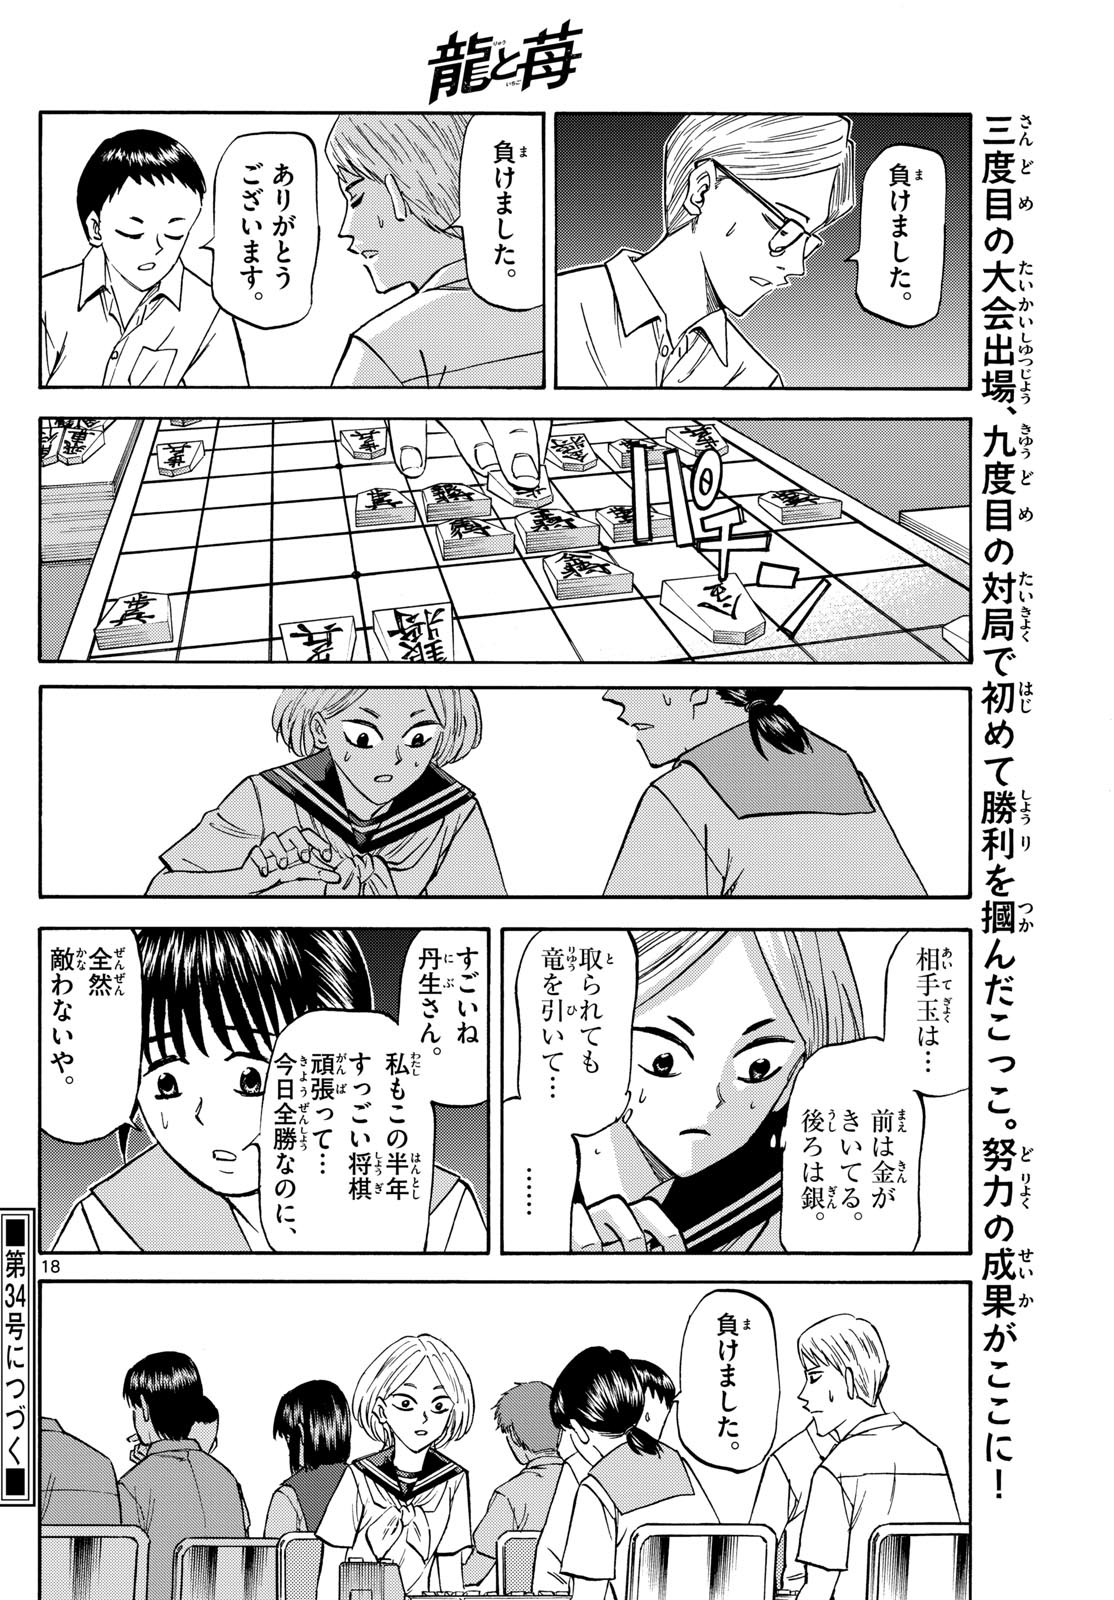 Ryu-to-Ichigo - Chapter 151 - Page 18